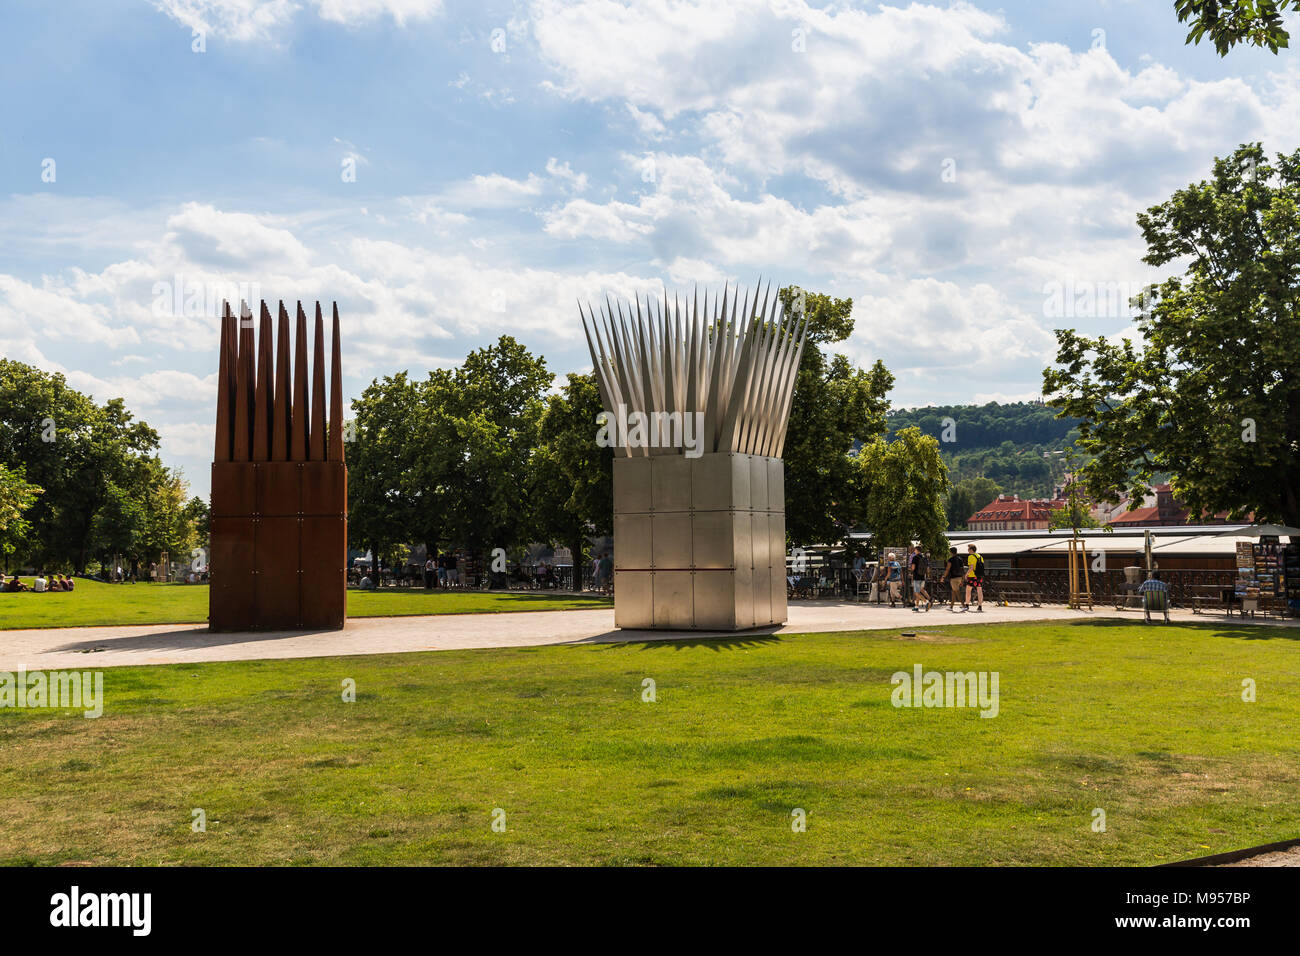 Praga, Repubblica Ceca - 15 giugno 2017: Vista di Jan Palach Memorial chiamato la composizione scultorea del Figlio e della madre le case a Praga sul ju Foto Stock